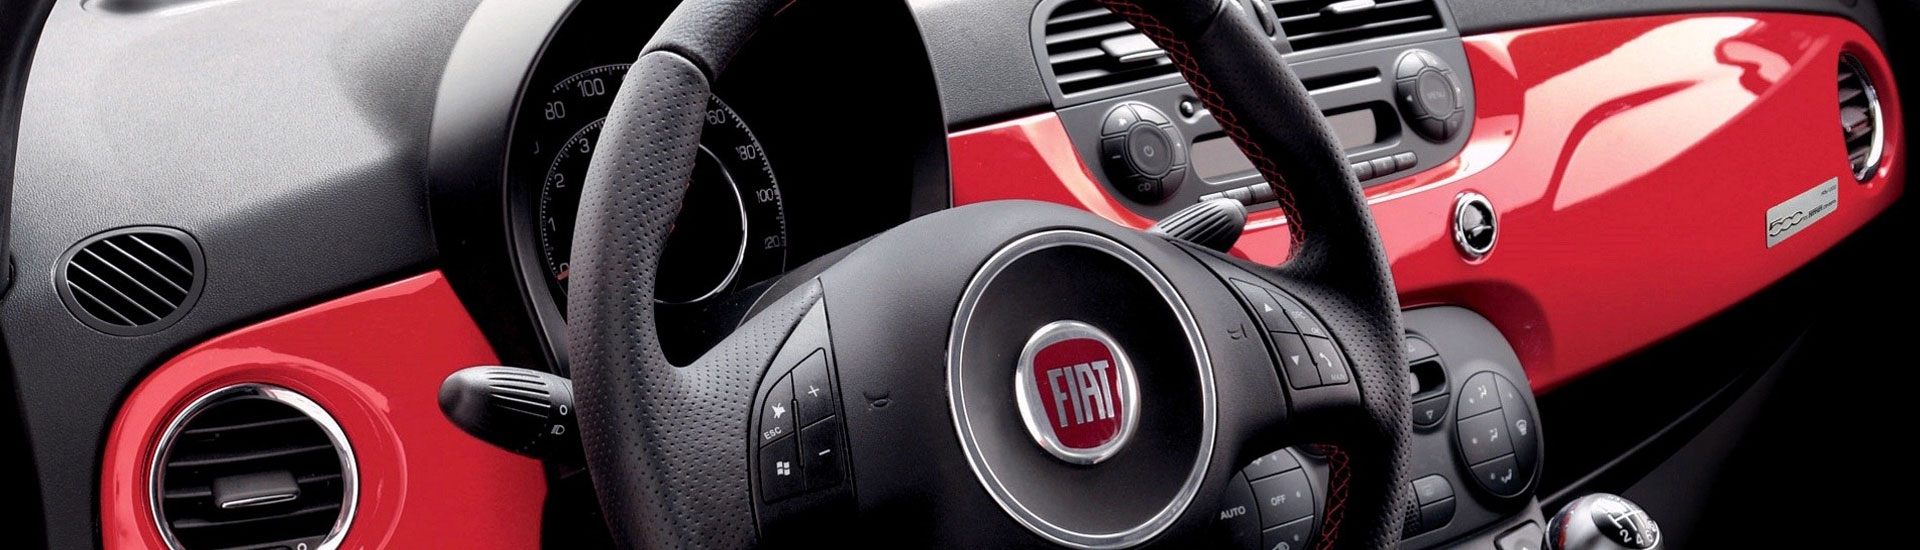 2016 Fiat 500L Custom Dash Kits